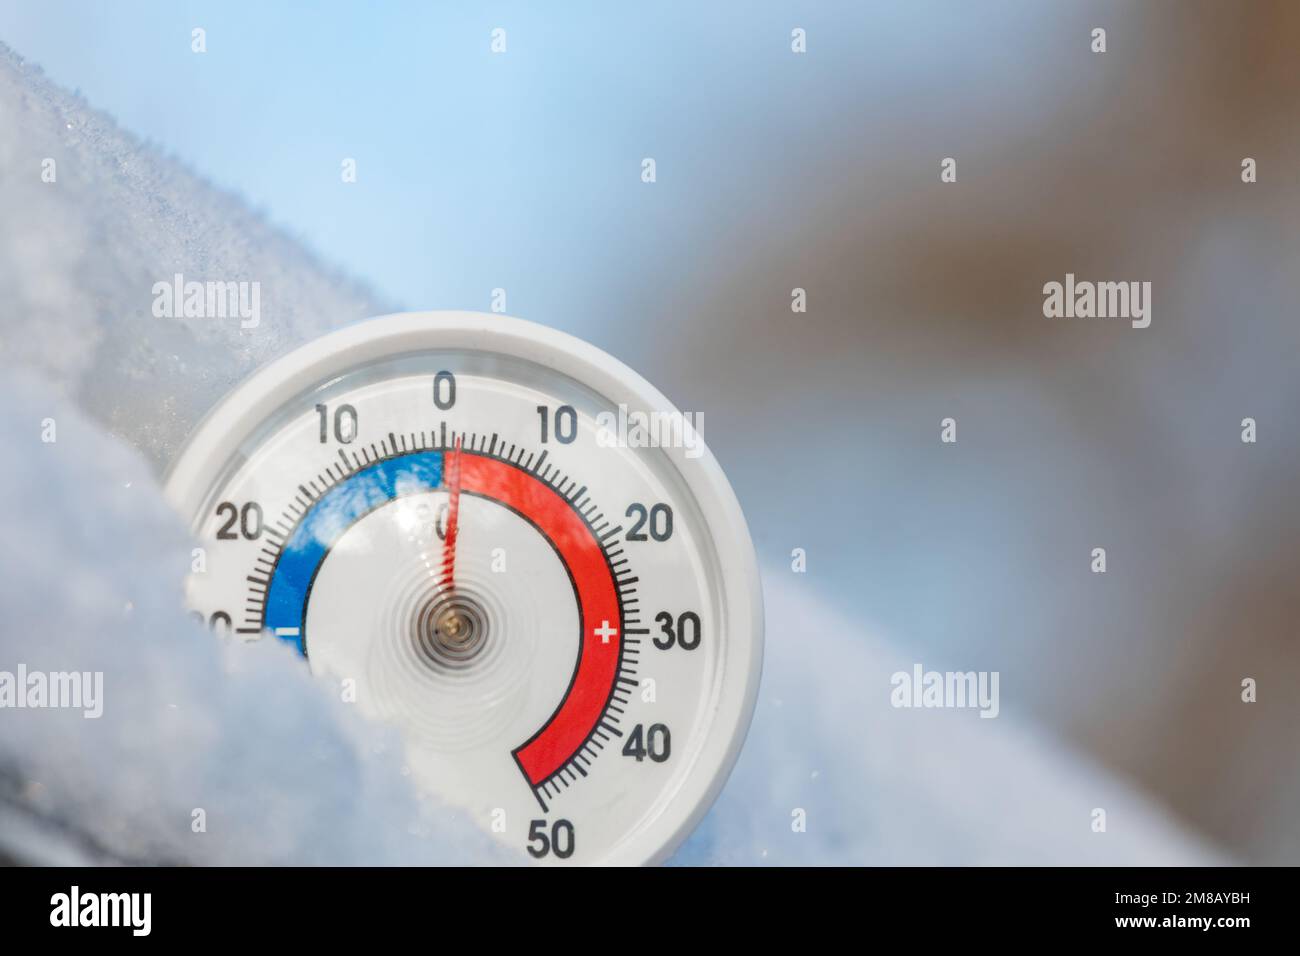 Thermomètre avec échelle celsius dans la neige et température ambiante de 1 degrés. Concept hiver chaud Banque D'Images